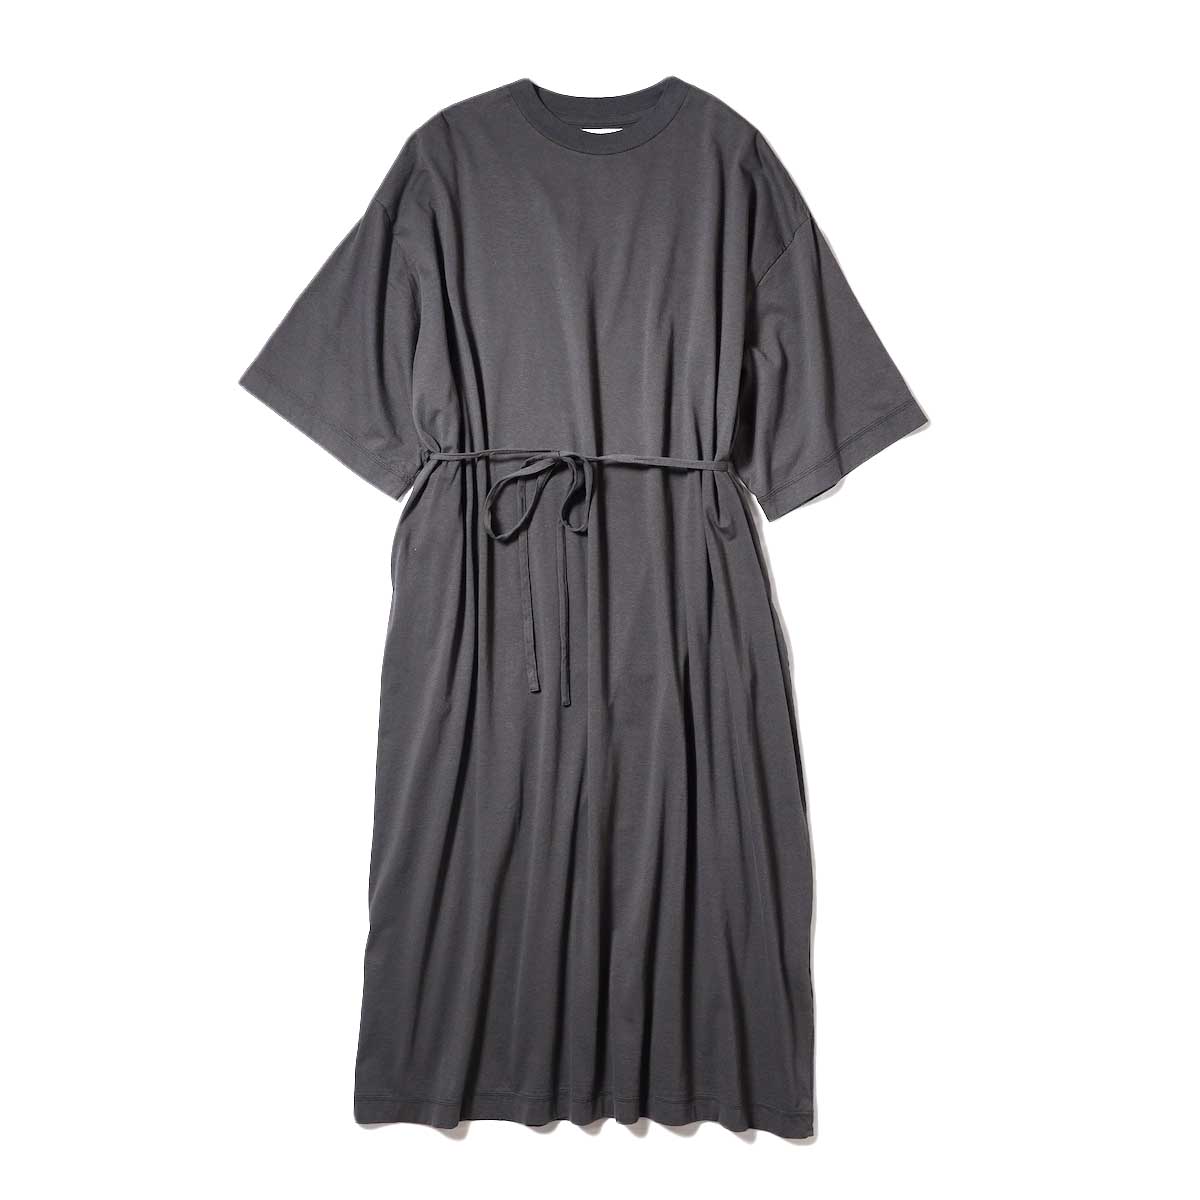 blurhmsROOTSSTOCK / High Gauge Super Size Dress (Charcoal)